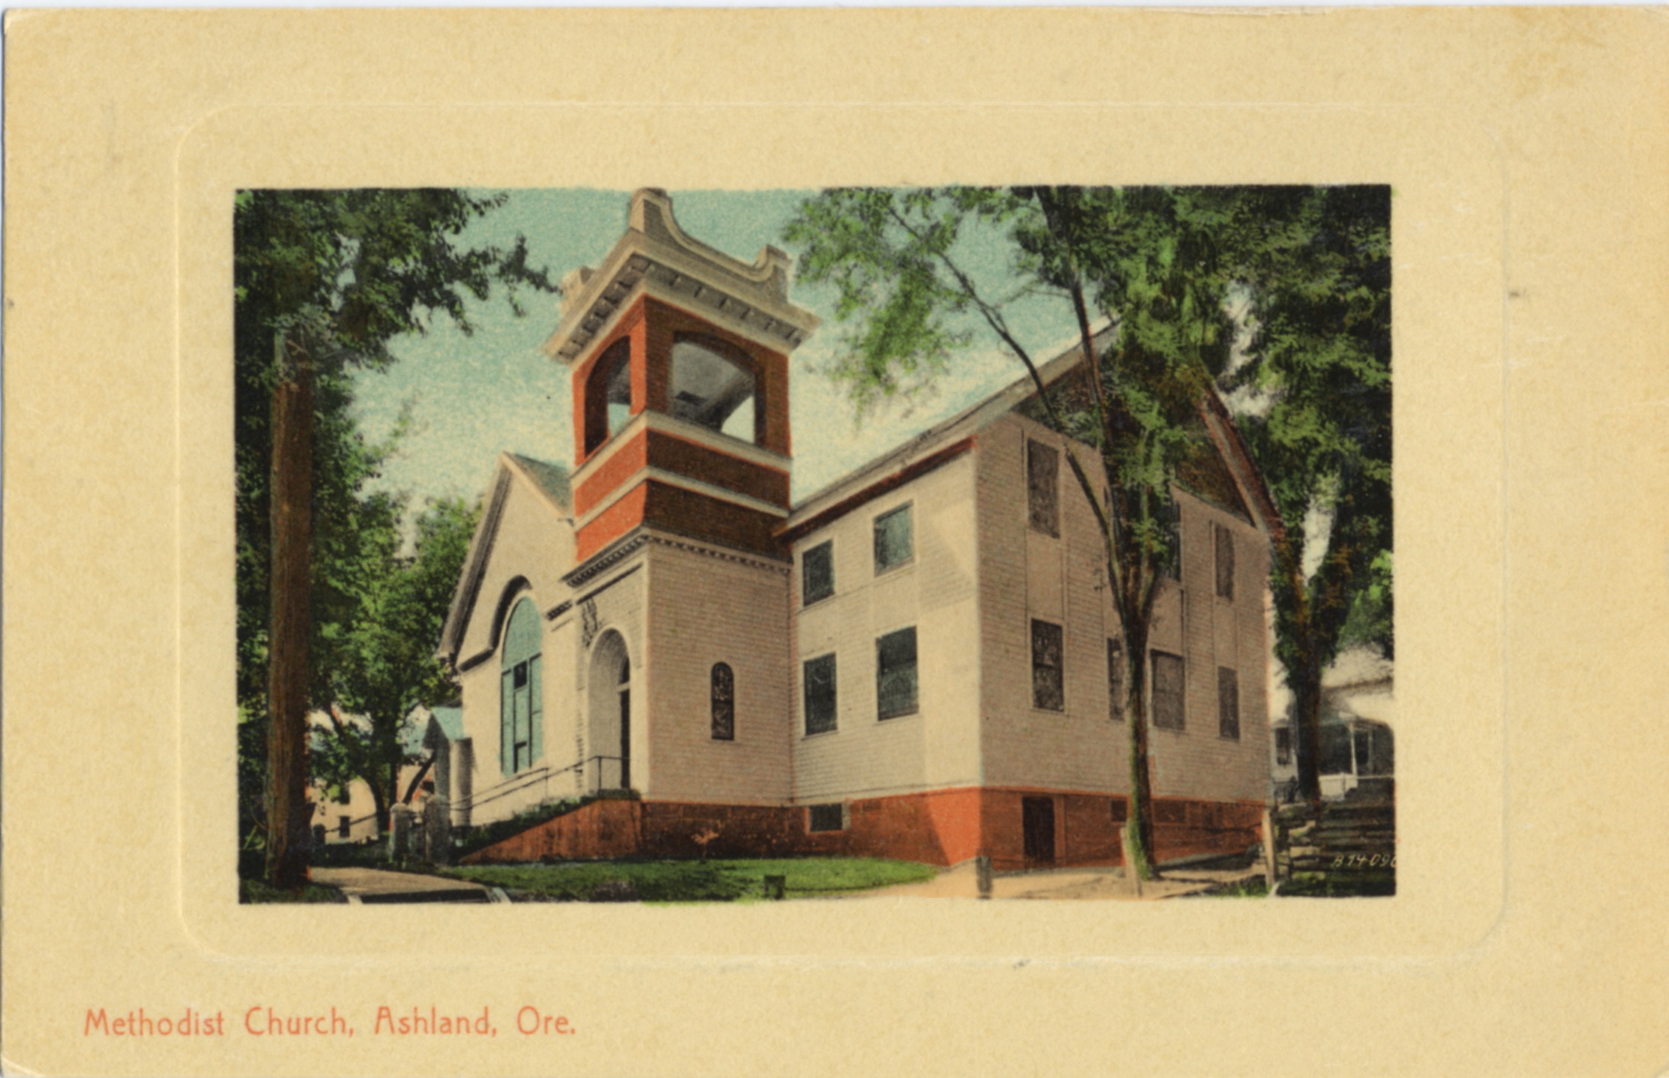 First United Methodist Church of Ashland